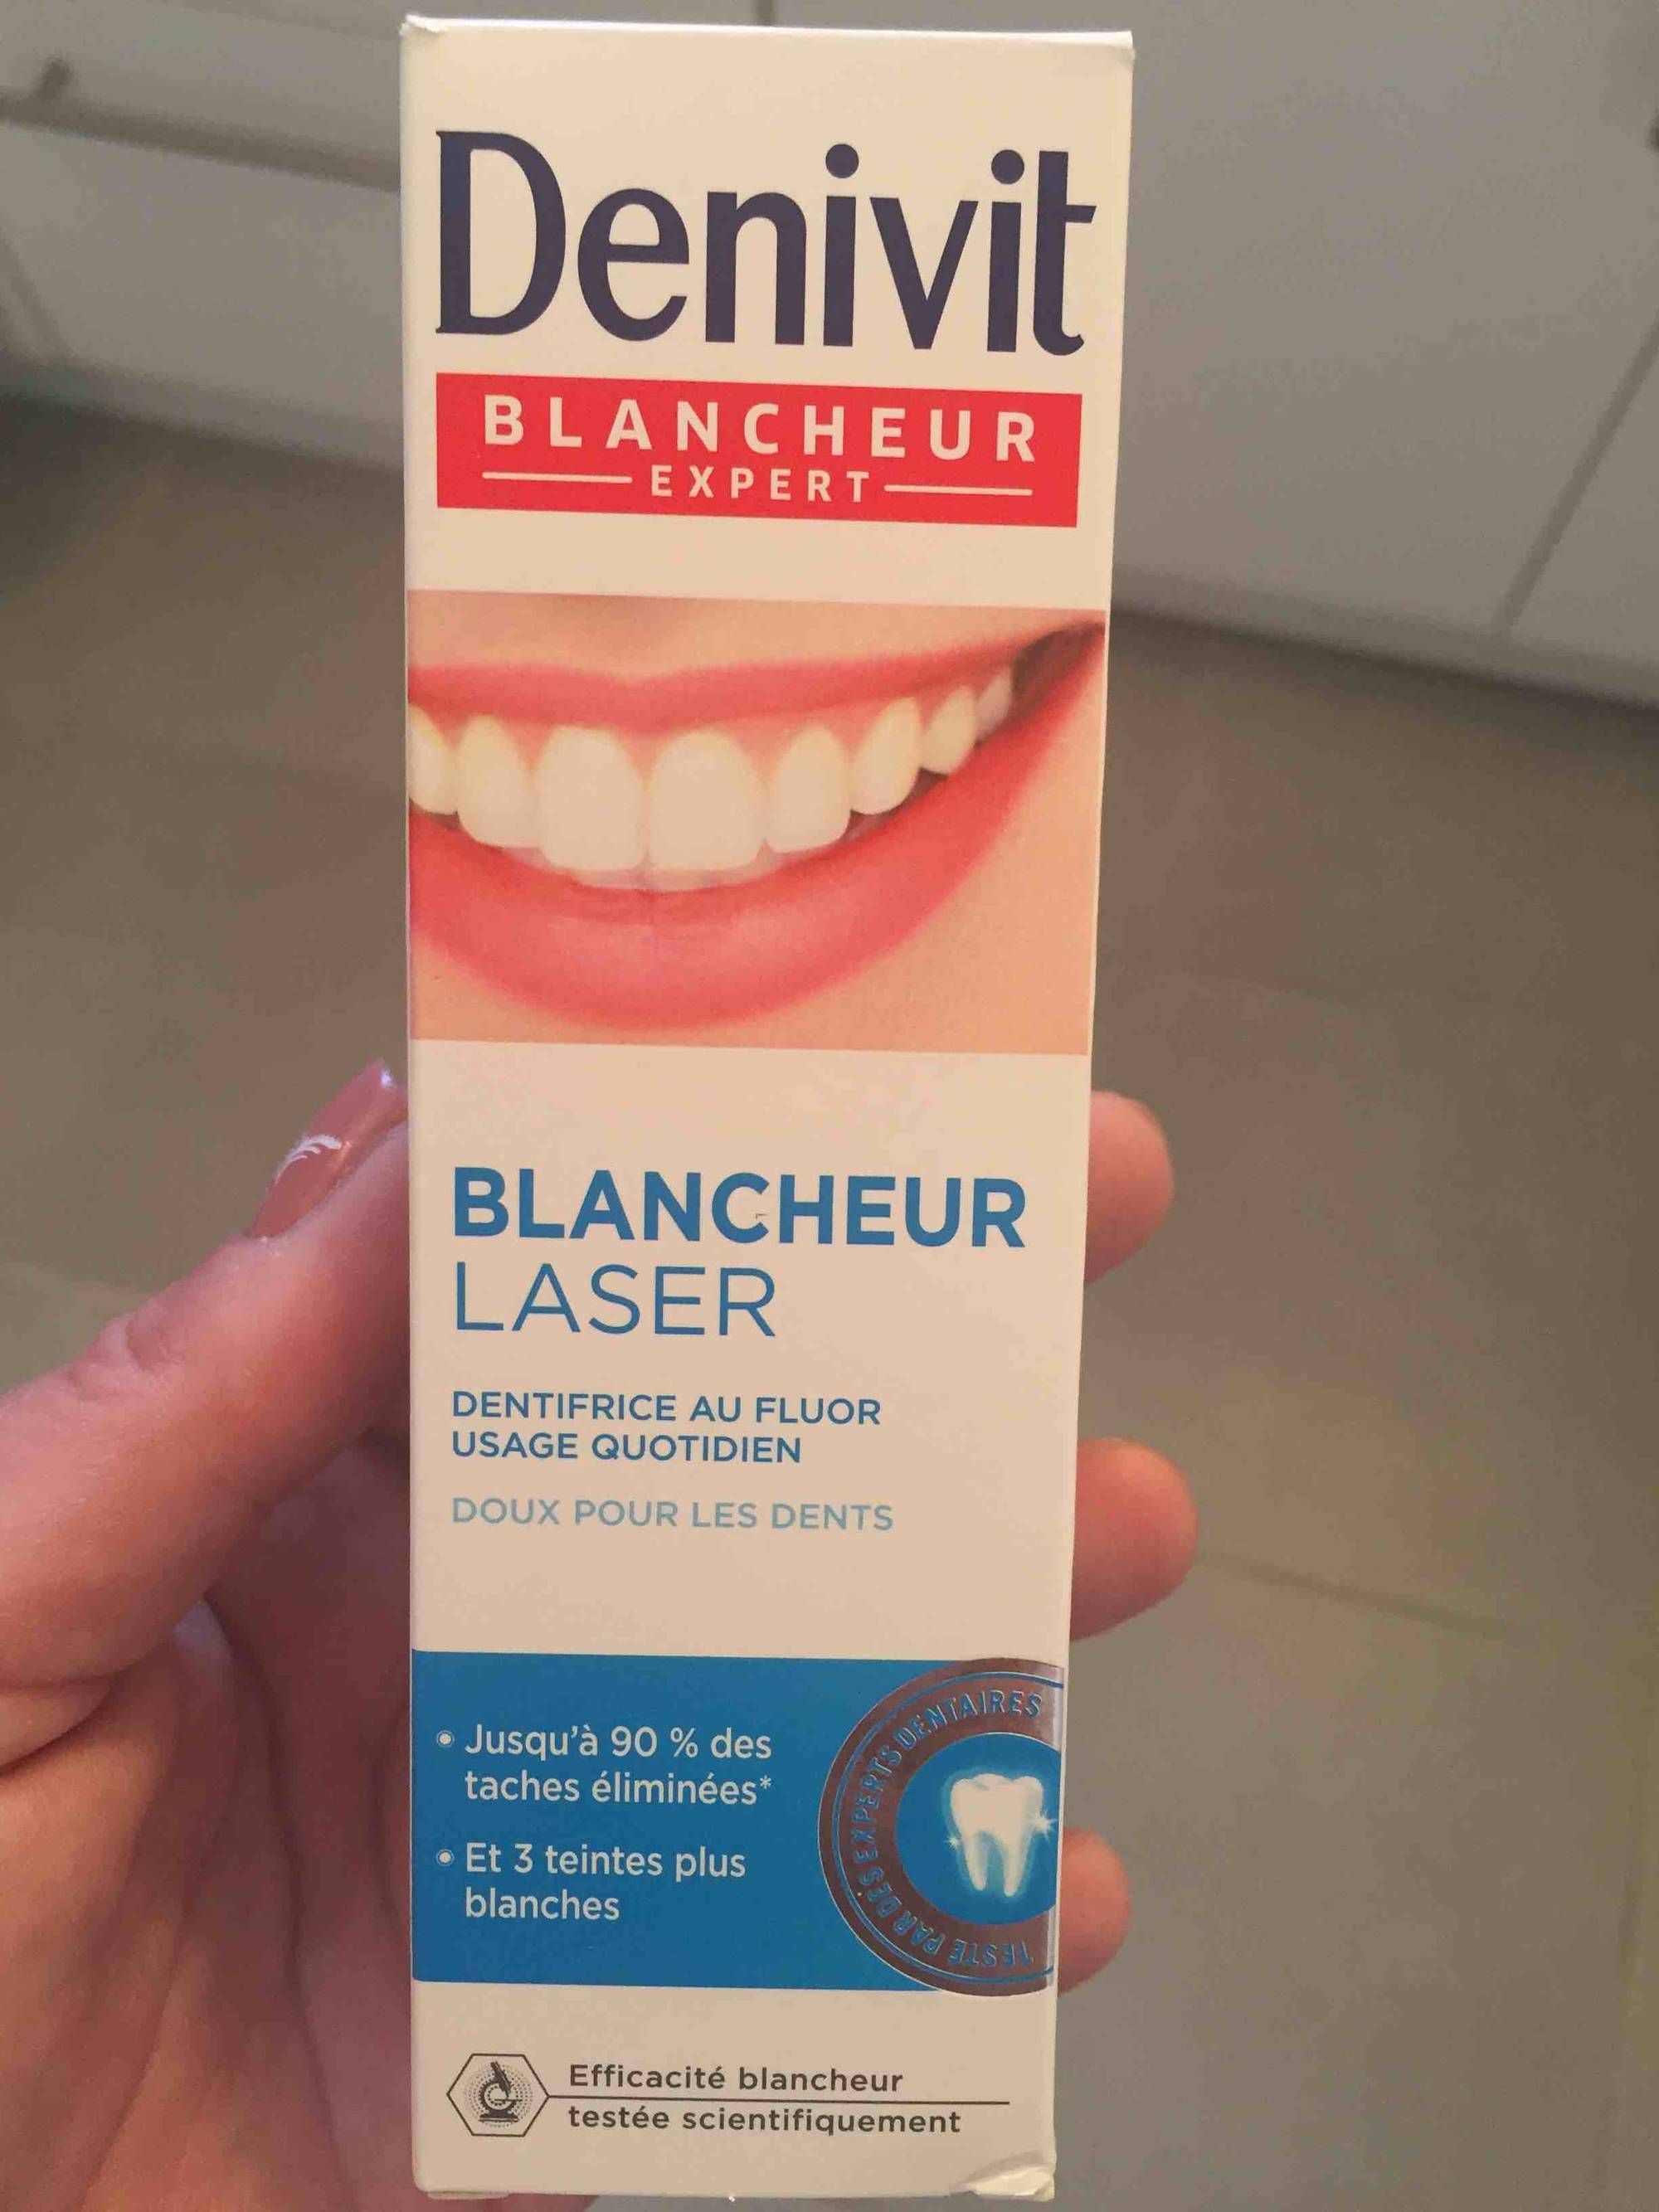 DENIVIT - Blancheur Laser - Dentifrice au fluor